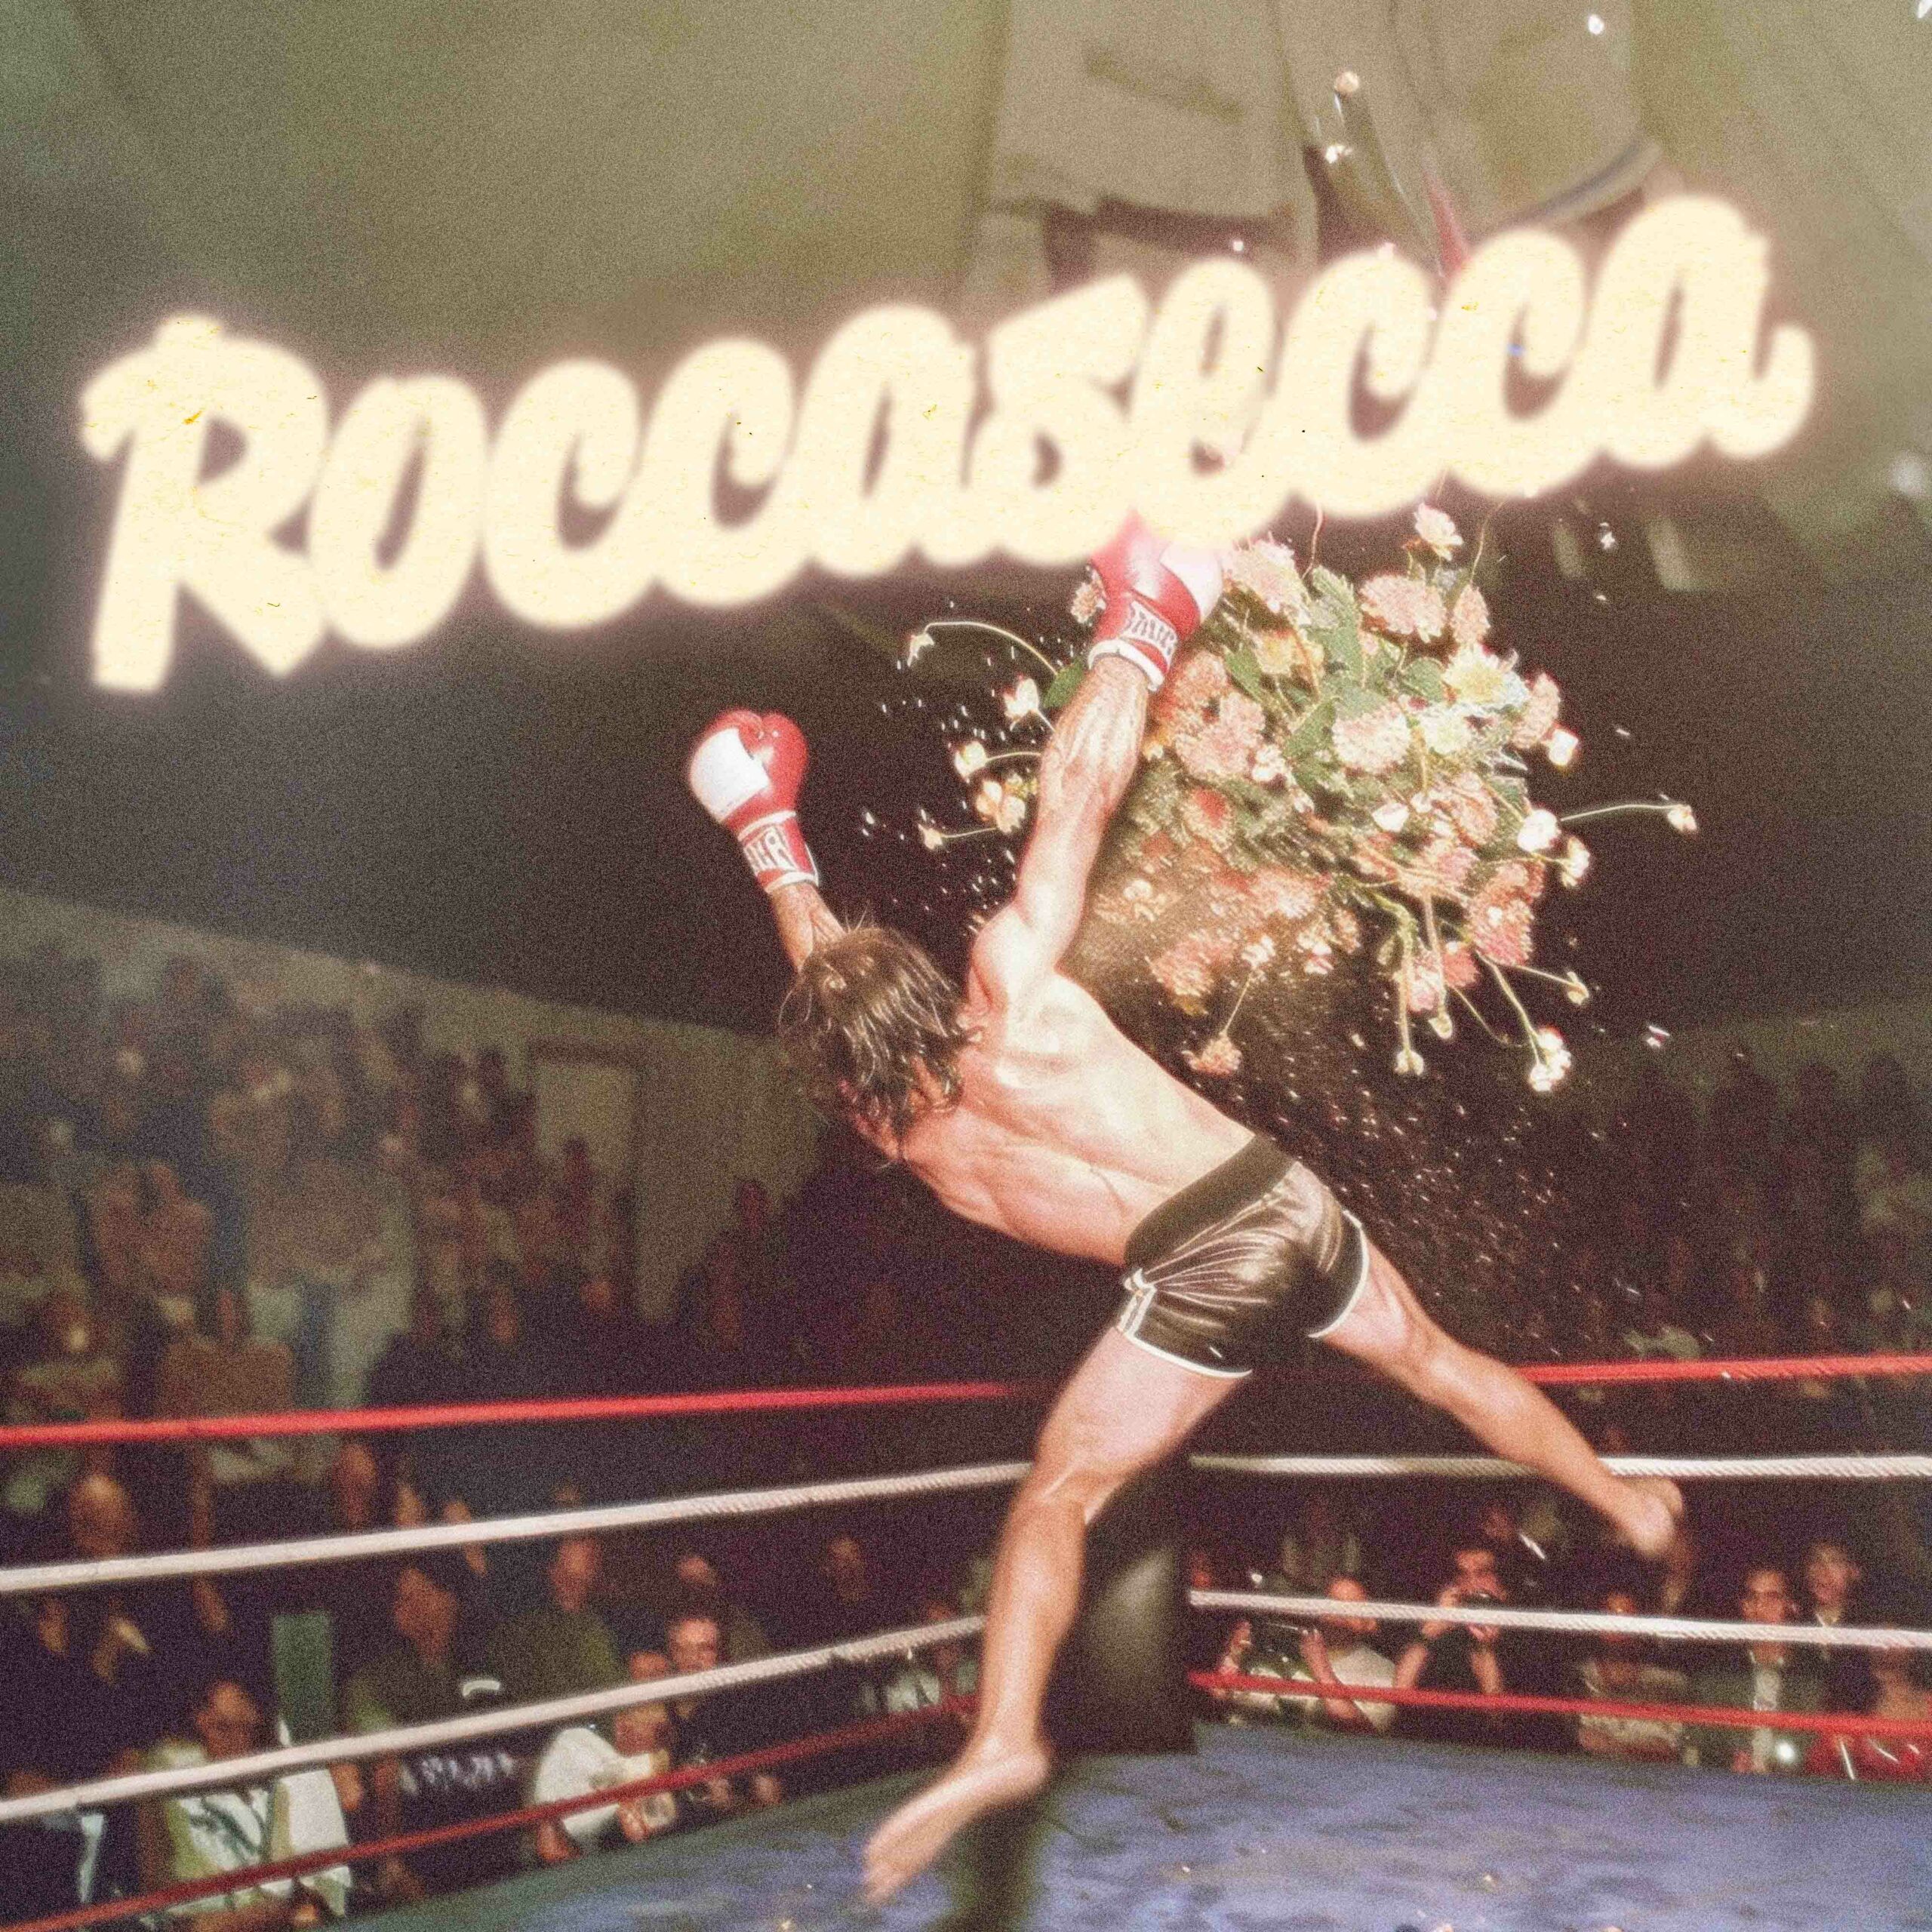 TESEGHELLA annuncia ROCCASECCA, EP d’esordio disponibile dal 12 luglio